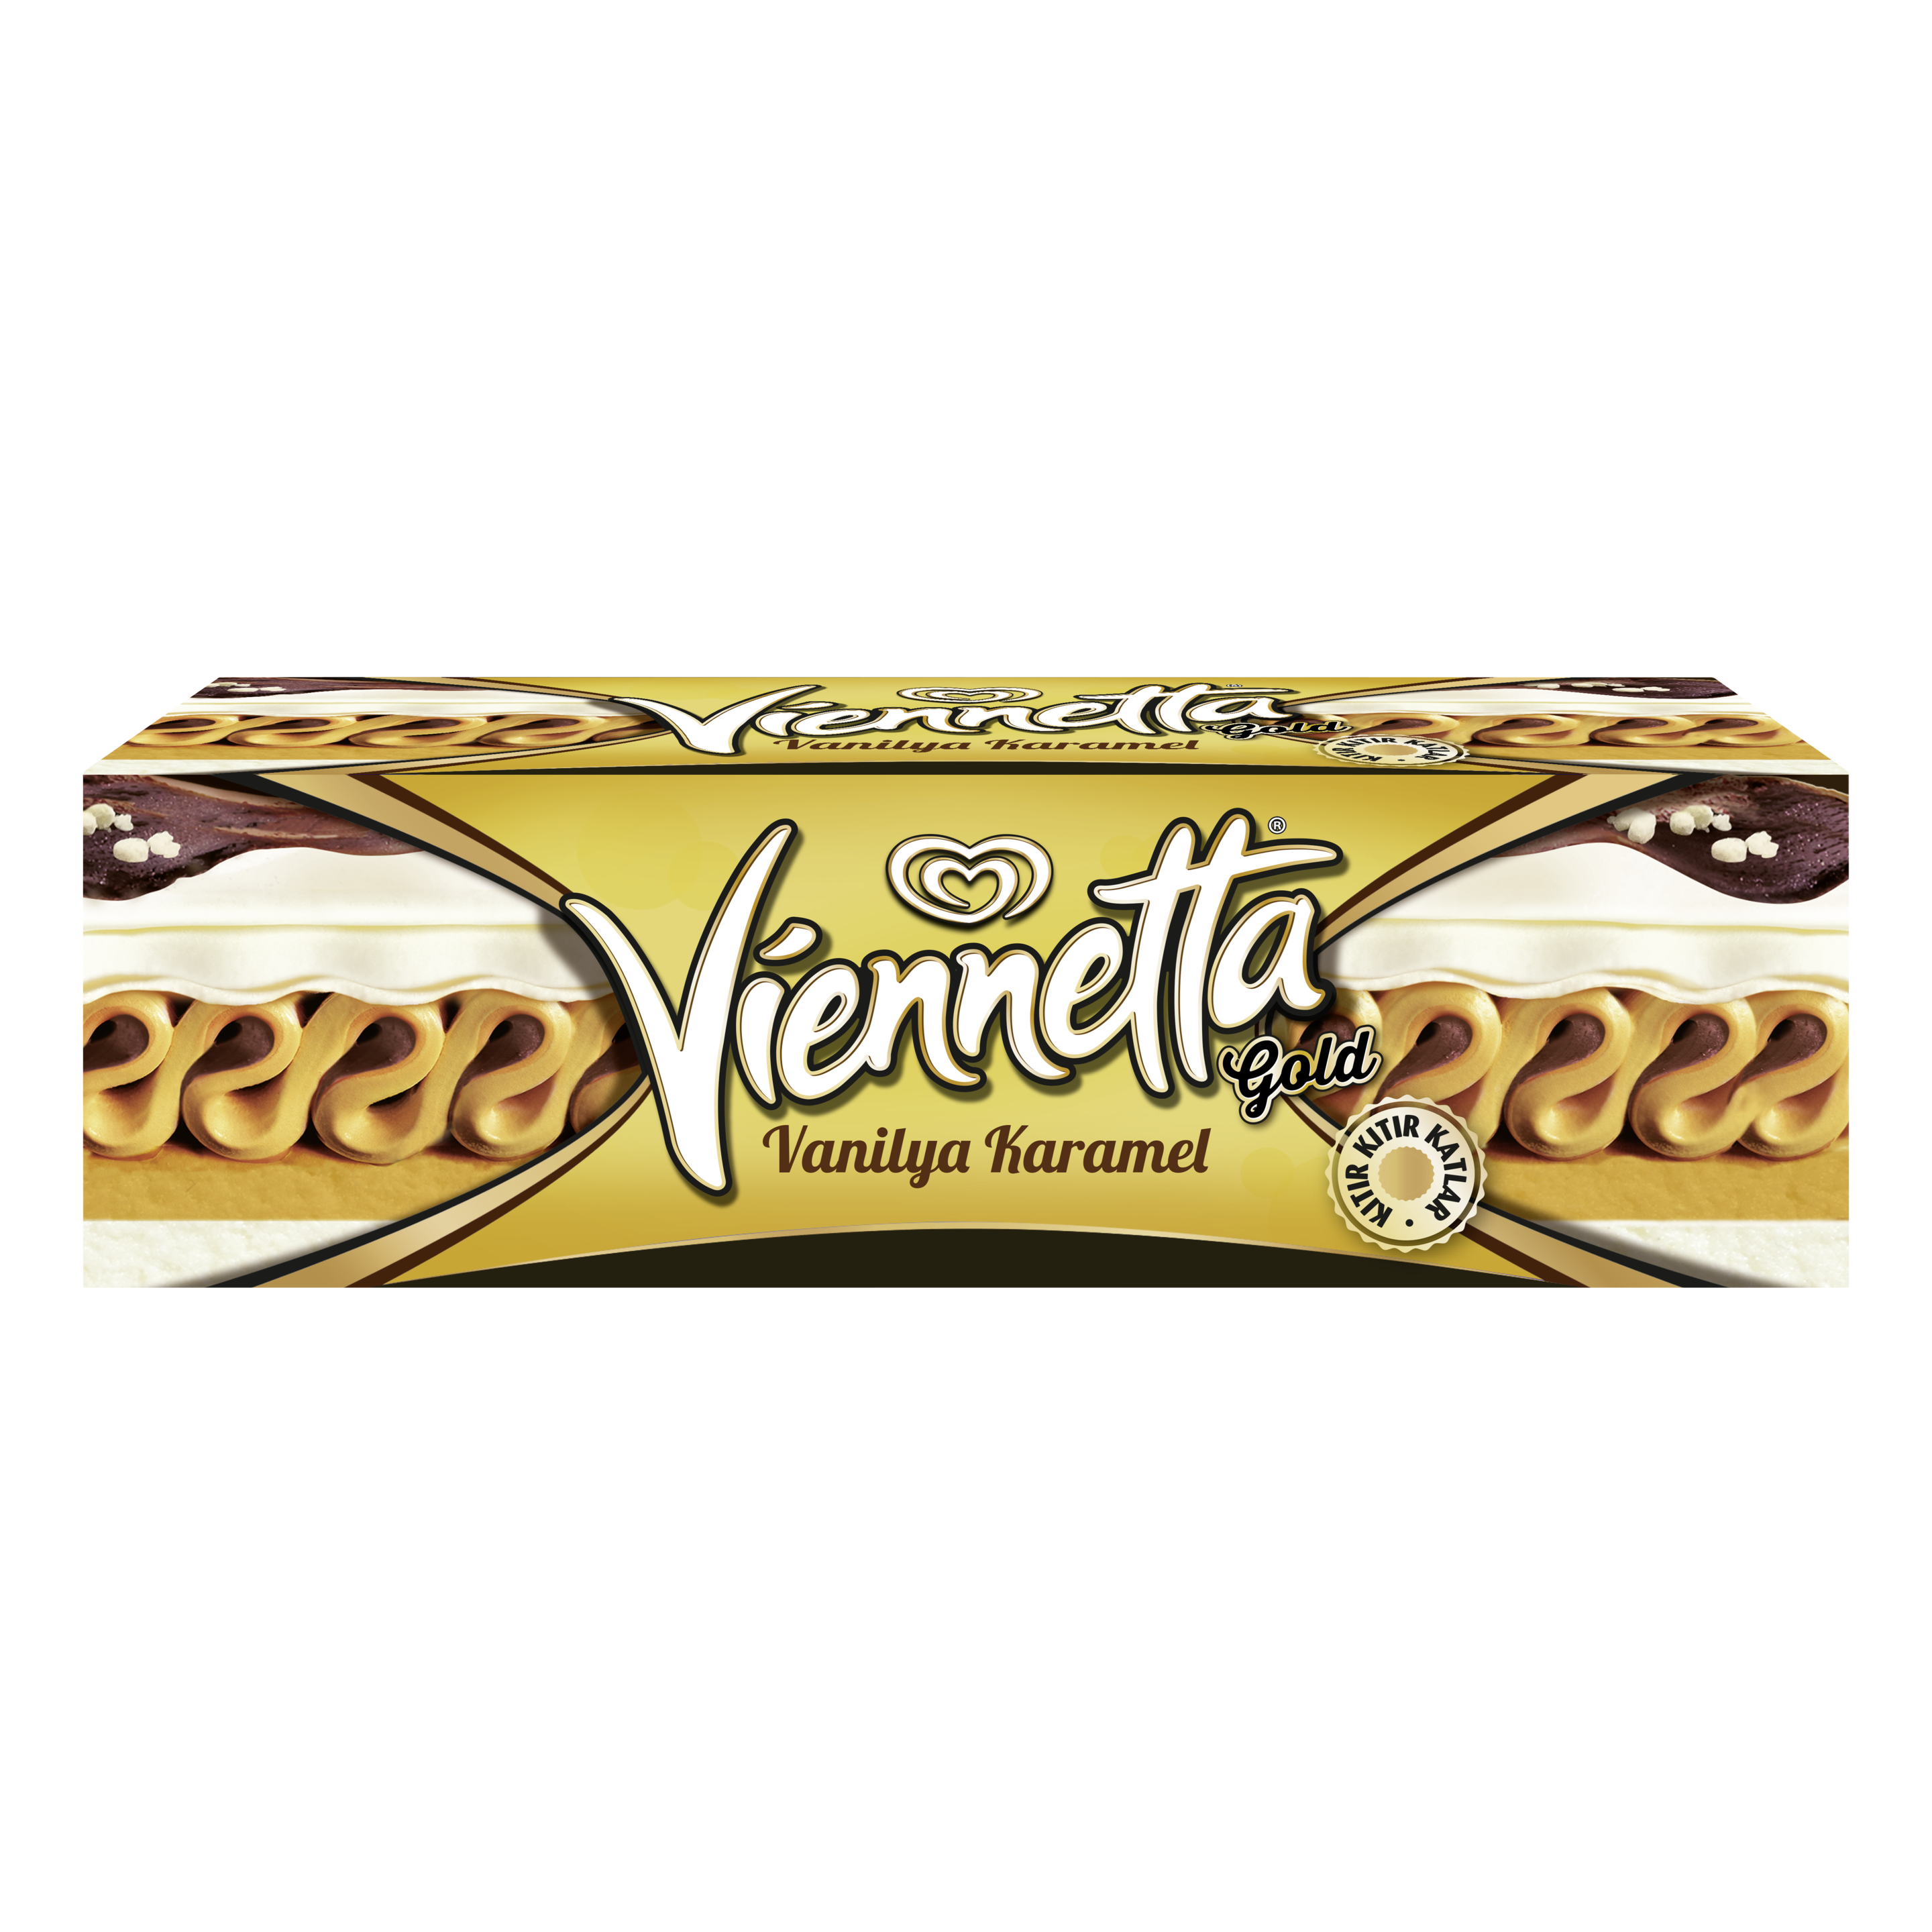 Viennetta Gold Vanilya Karamel